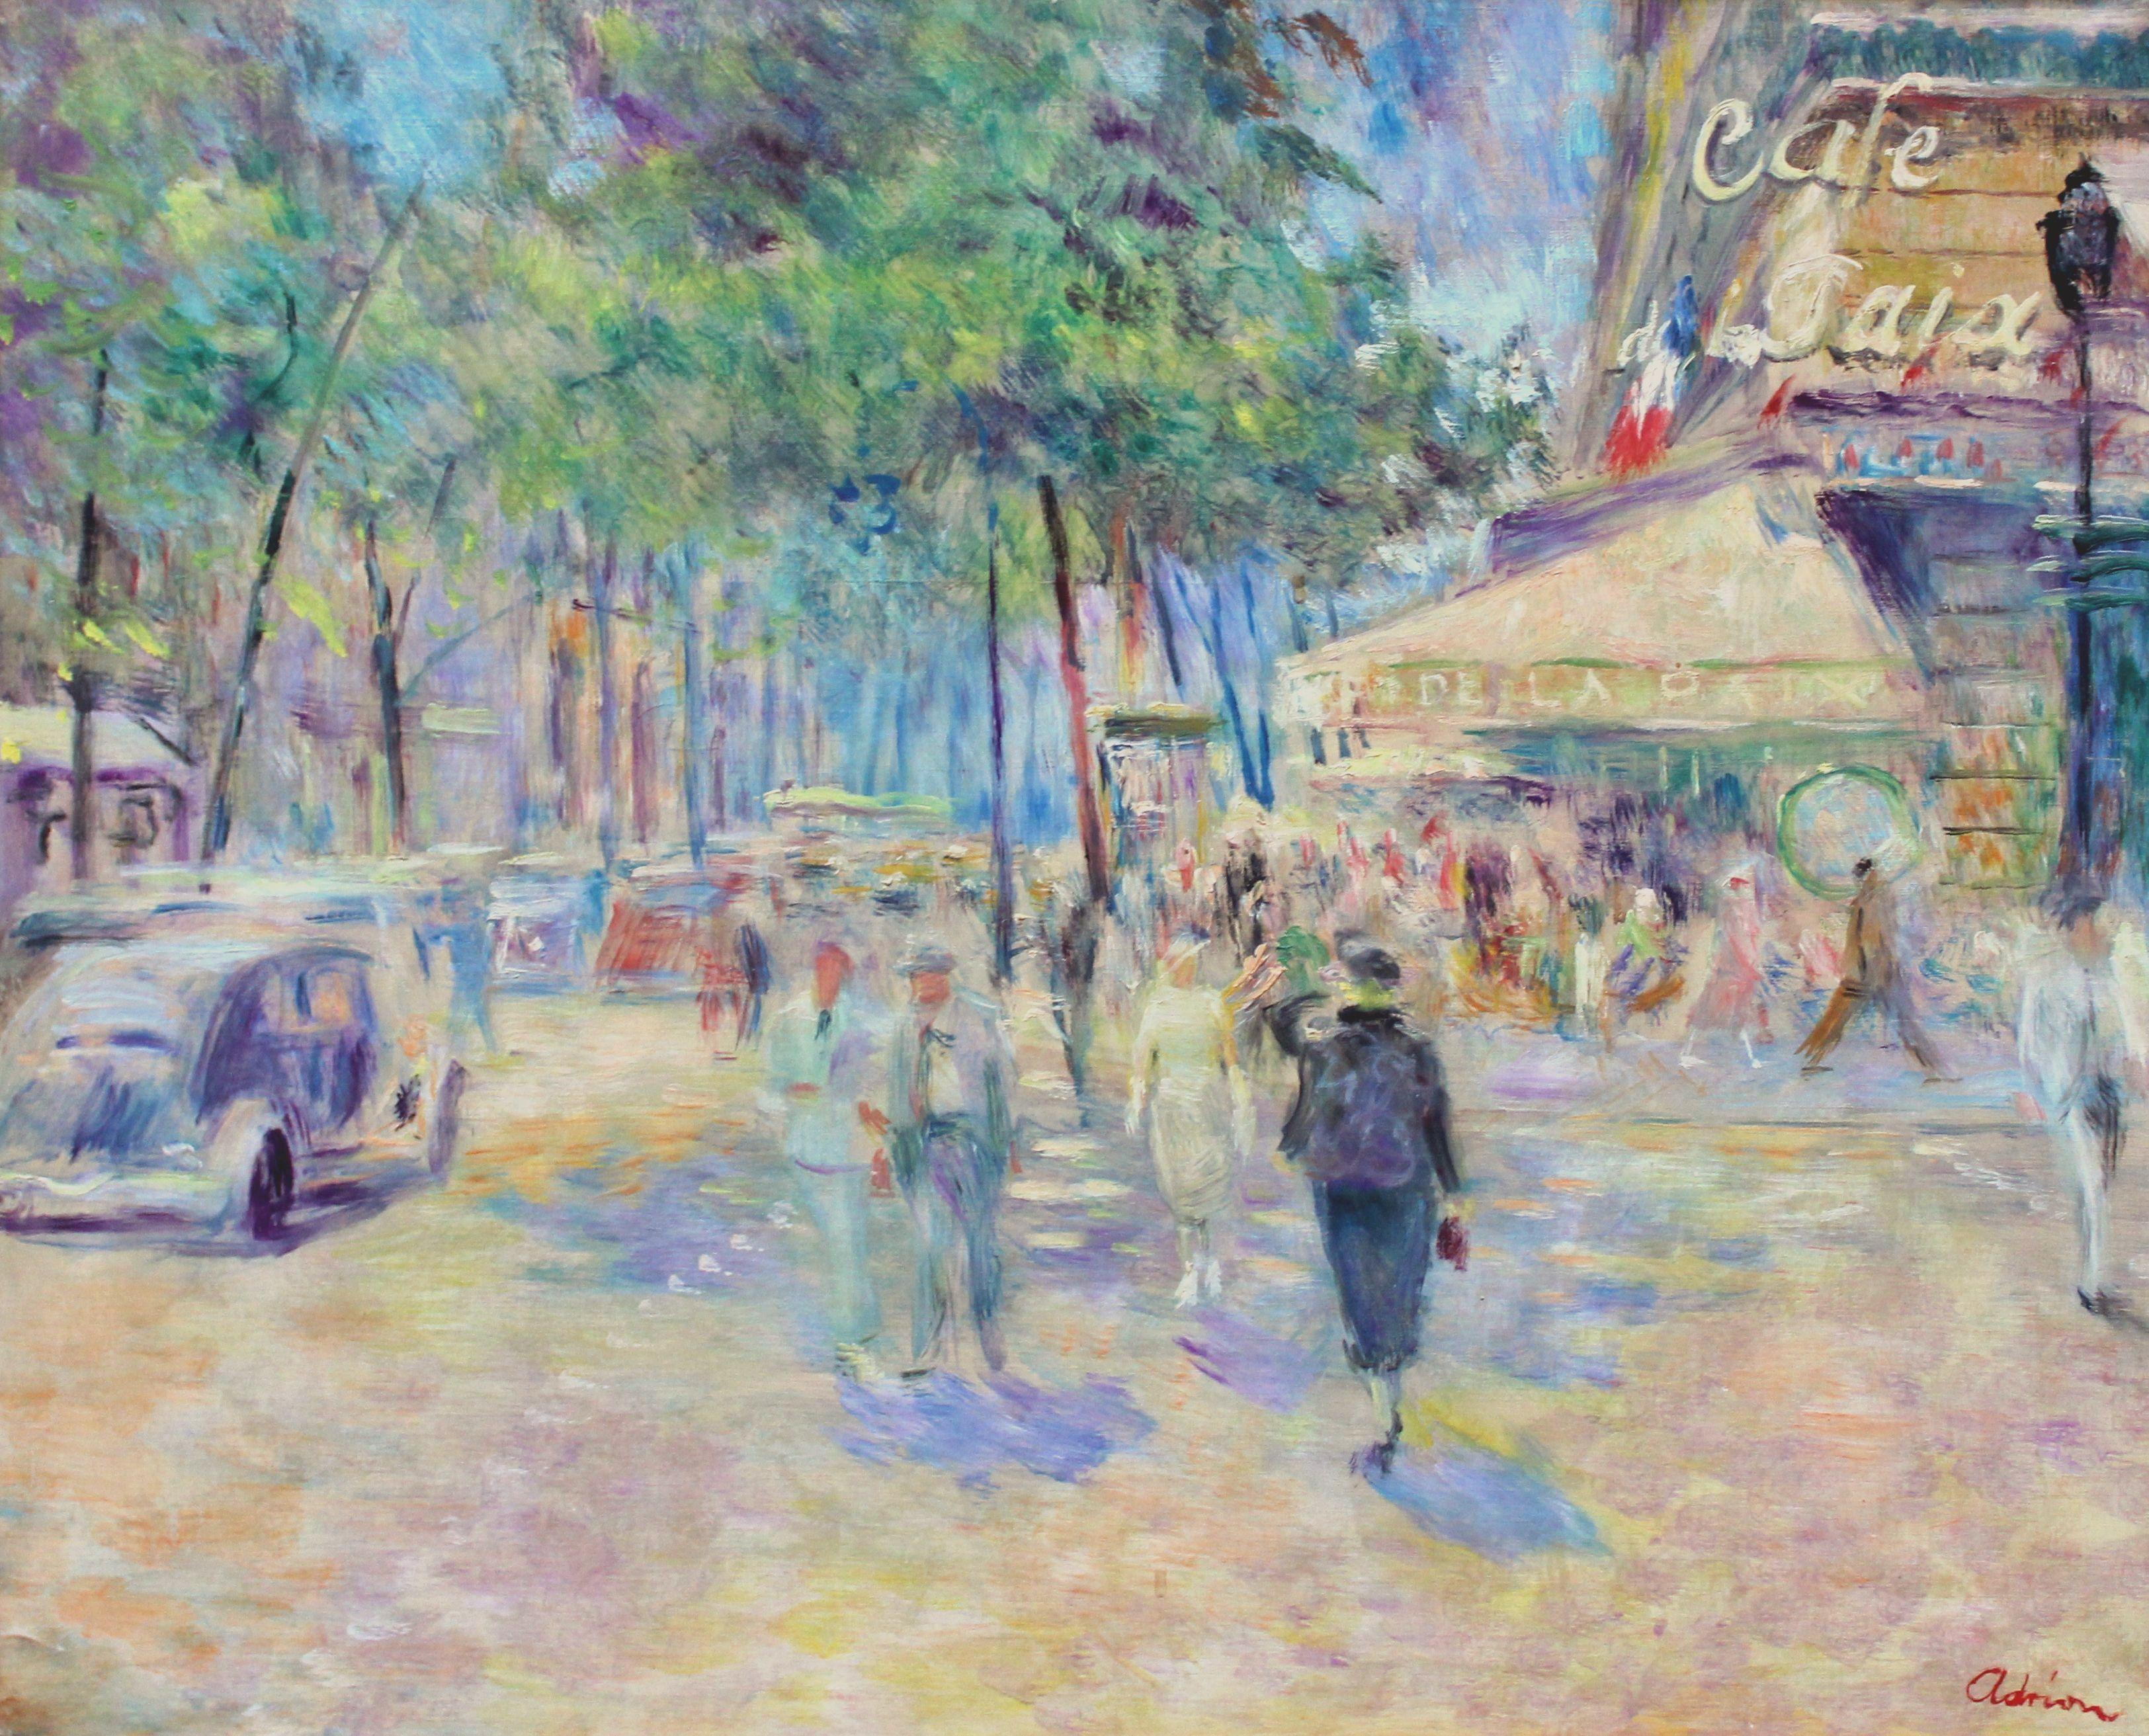 Lucien Adrion Figurative Painting - Paris, Cafe de la Paix. Oil on canvas, 60x73 cm